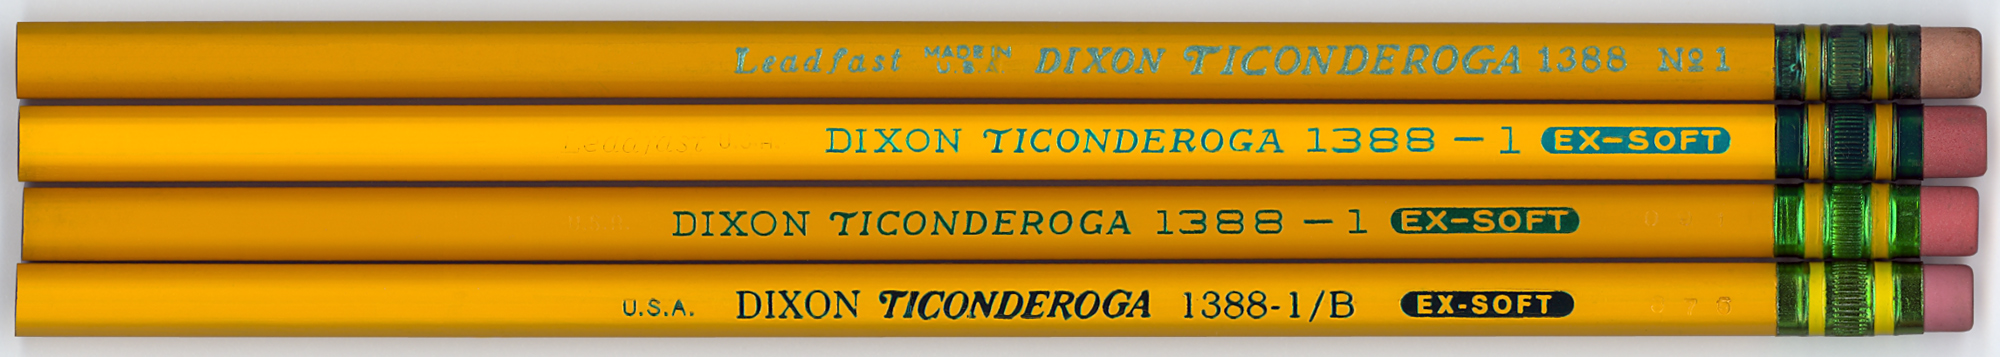 11 Dixon Ticonderoga Pencils #1388 #3 Hard # TV 3B